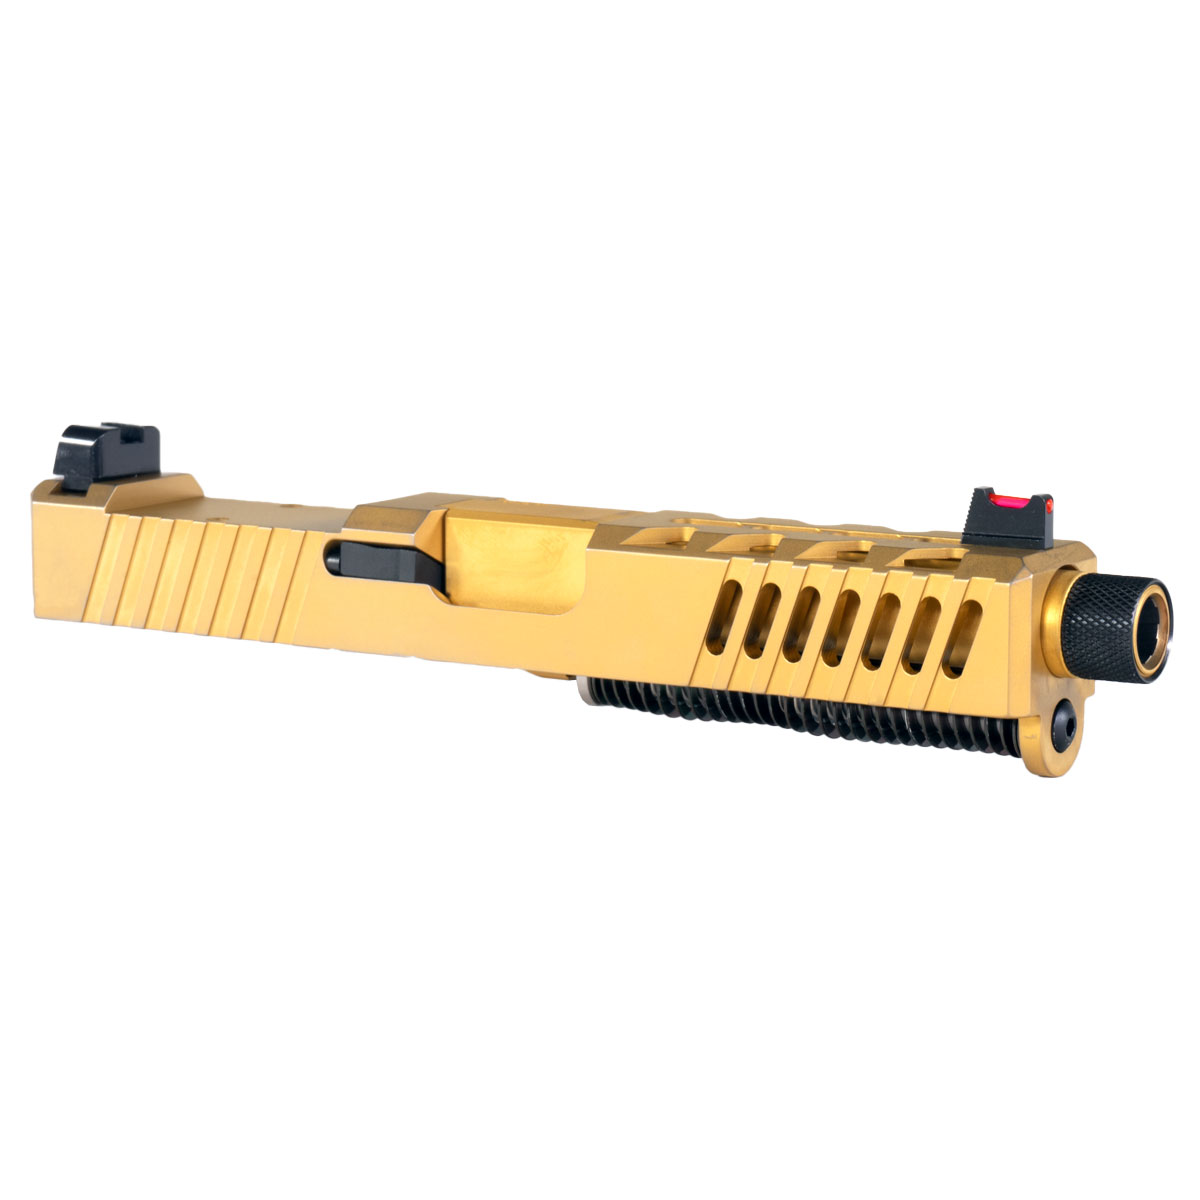 MMC 'AU-197' 9mm Complete Slide Kit - Glock 19 Gen 1-3 Compatible